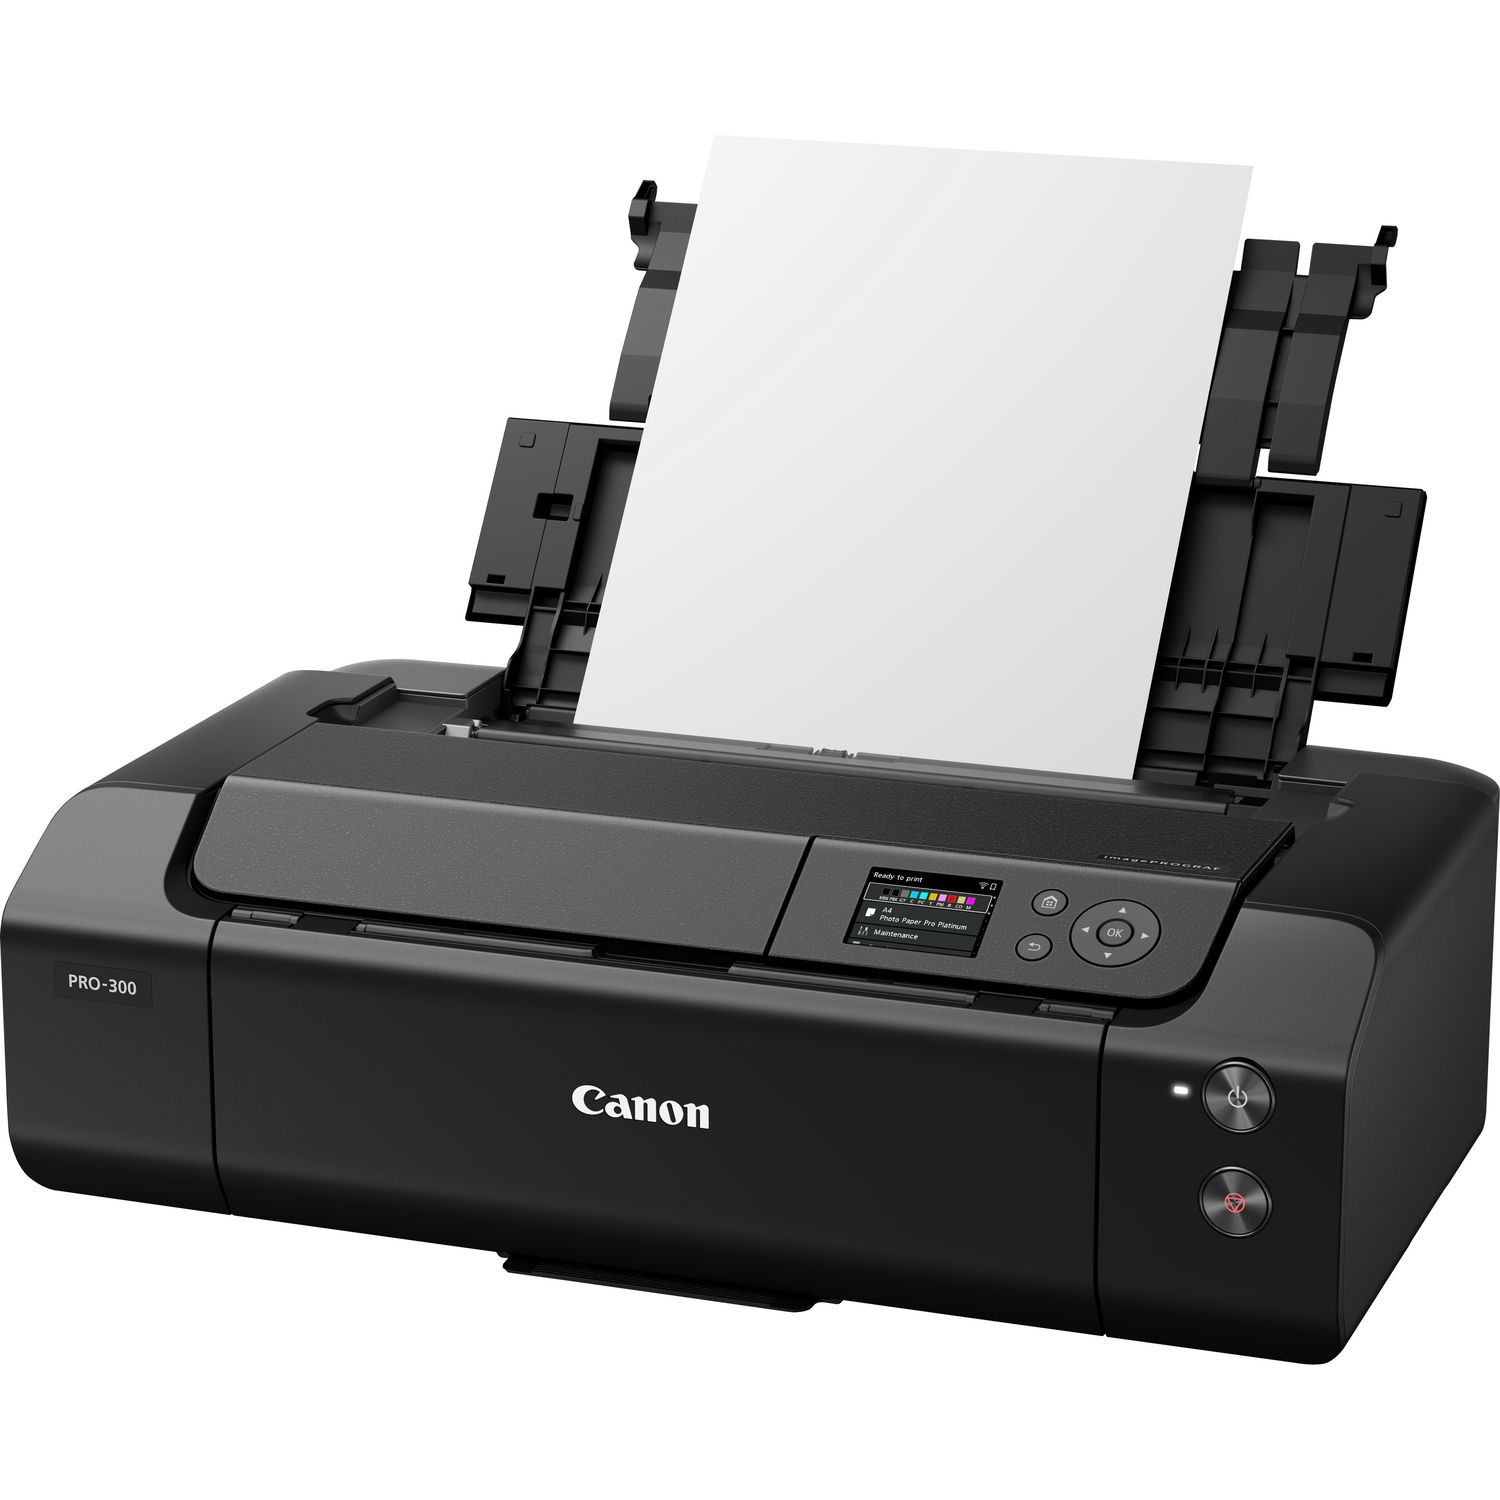 canon-pixma-pro-300-printer-glazer-s-camera-inc